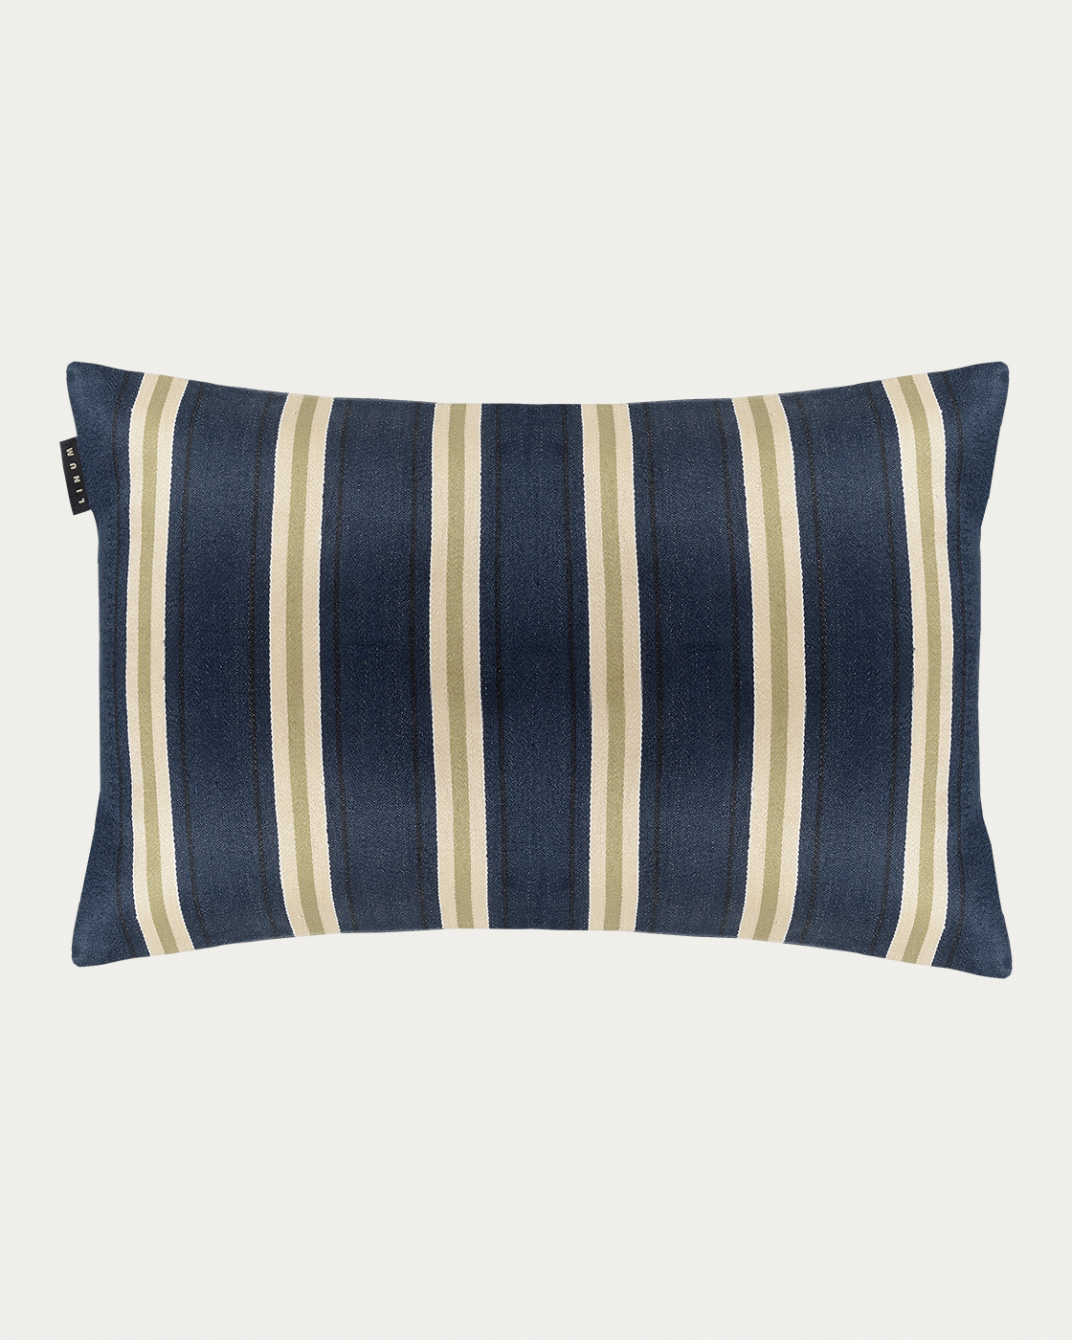 LUCCA Cushion cover 40x60 cm Dark grey blue